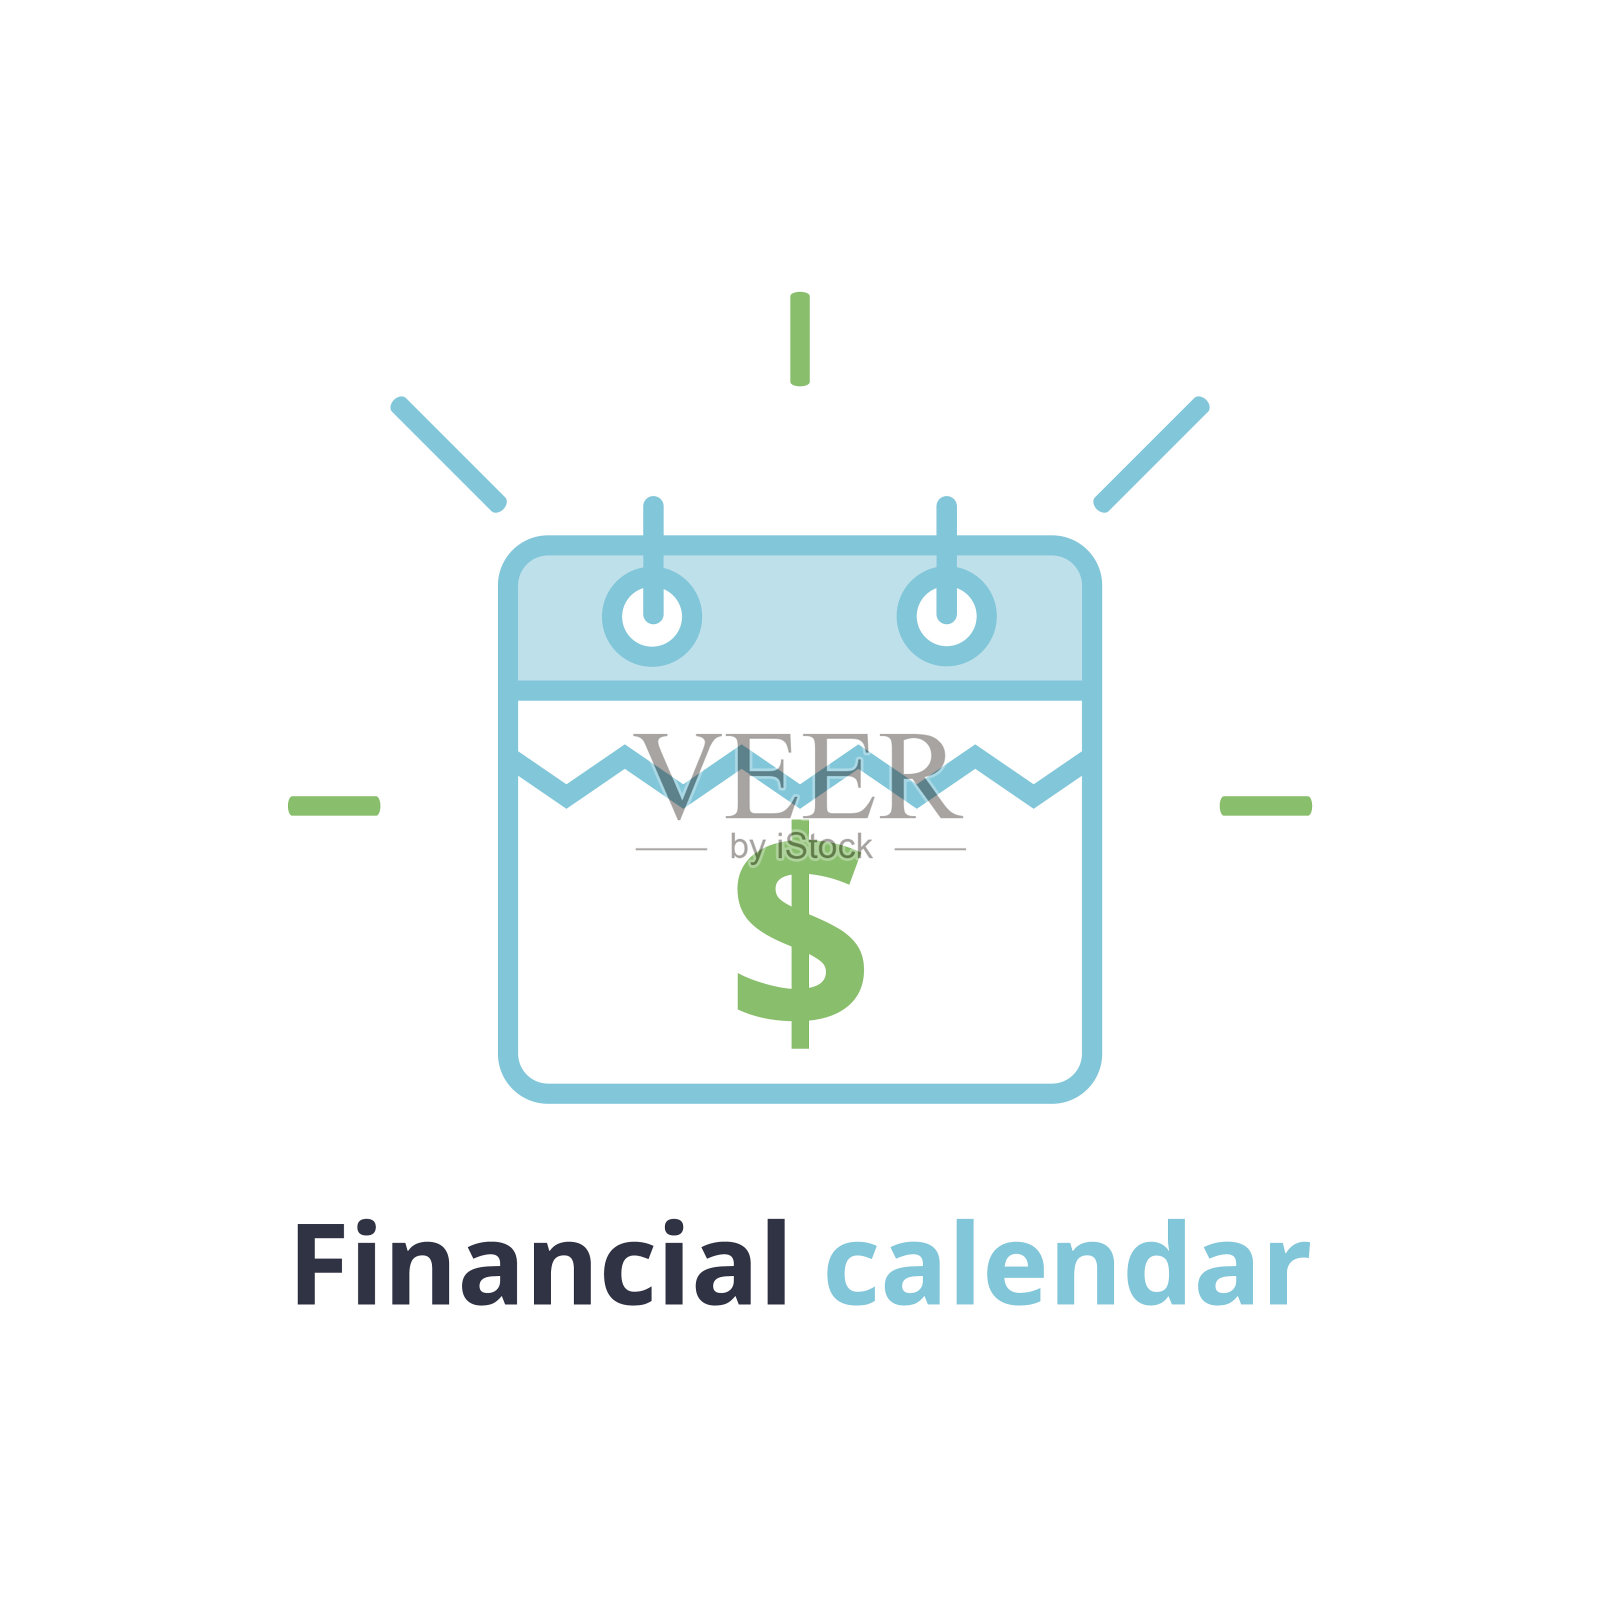 财务日历，年度付款日，月度预算计划，固定期限概念，贷款期限设计模板素材